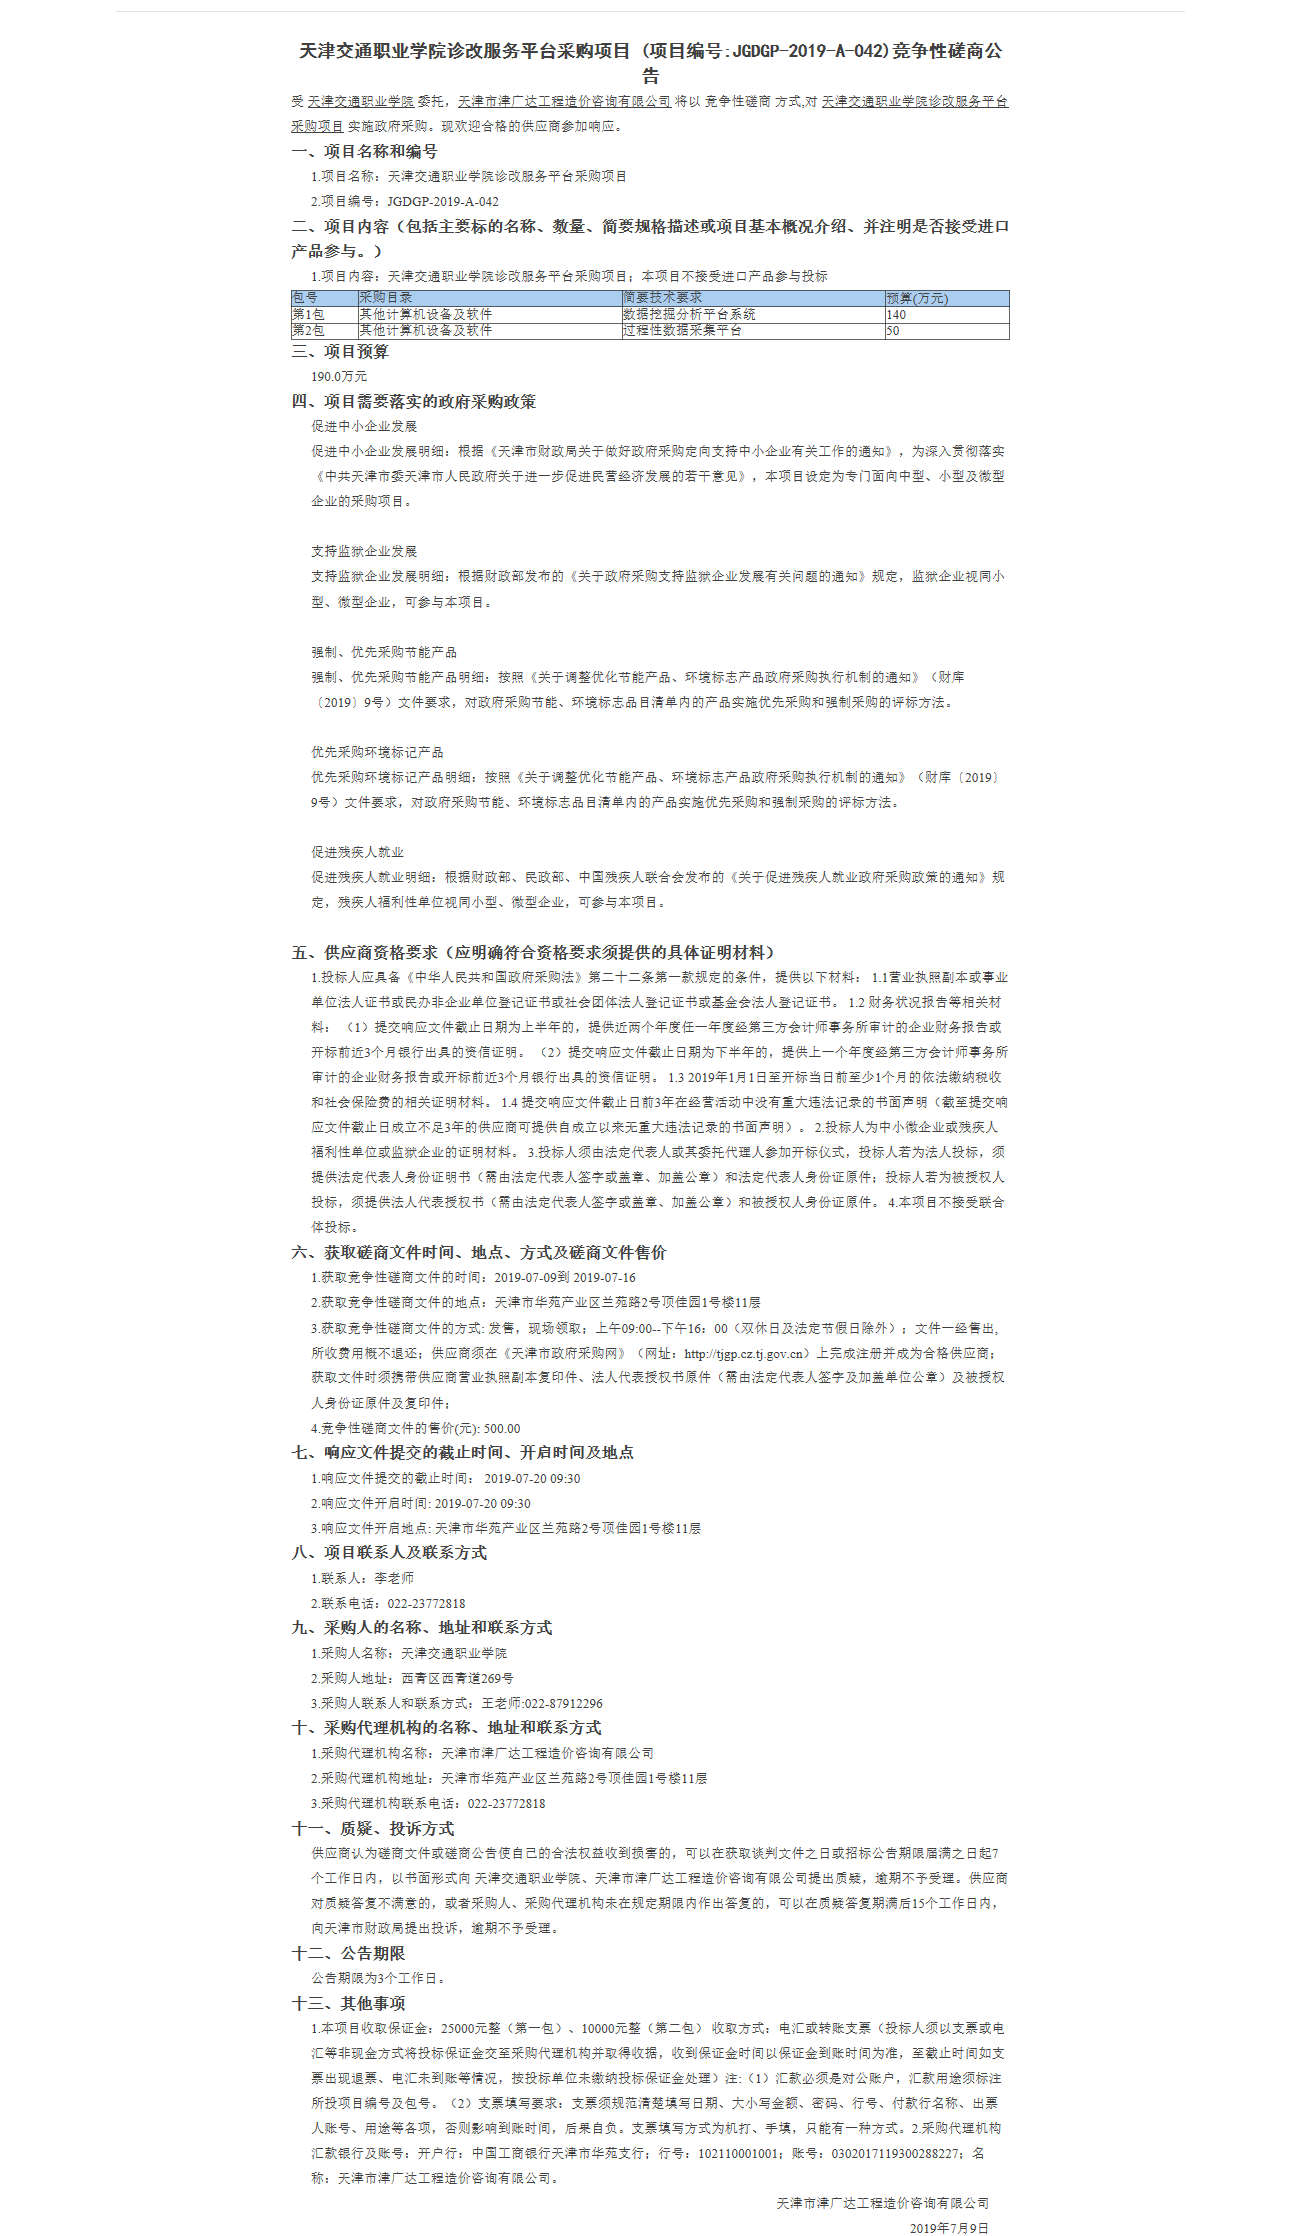 天津交通职业学院诊改服务平台采购项目(图1)